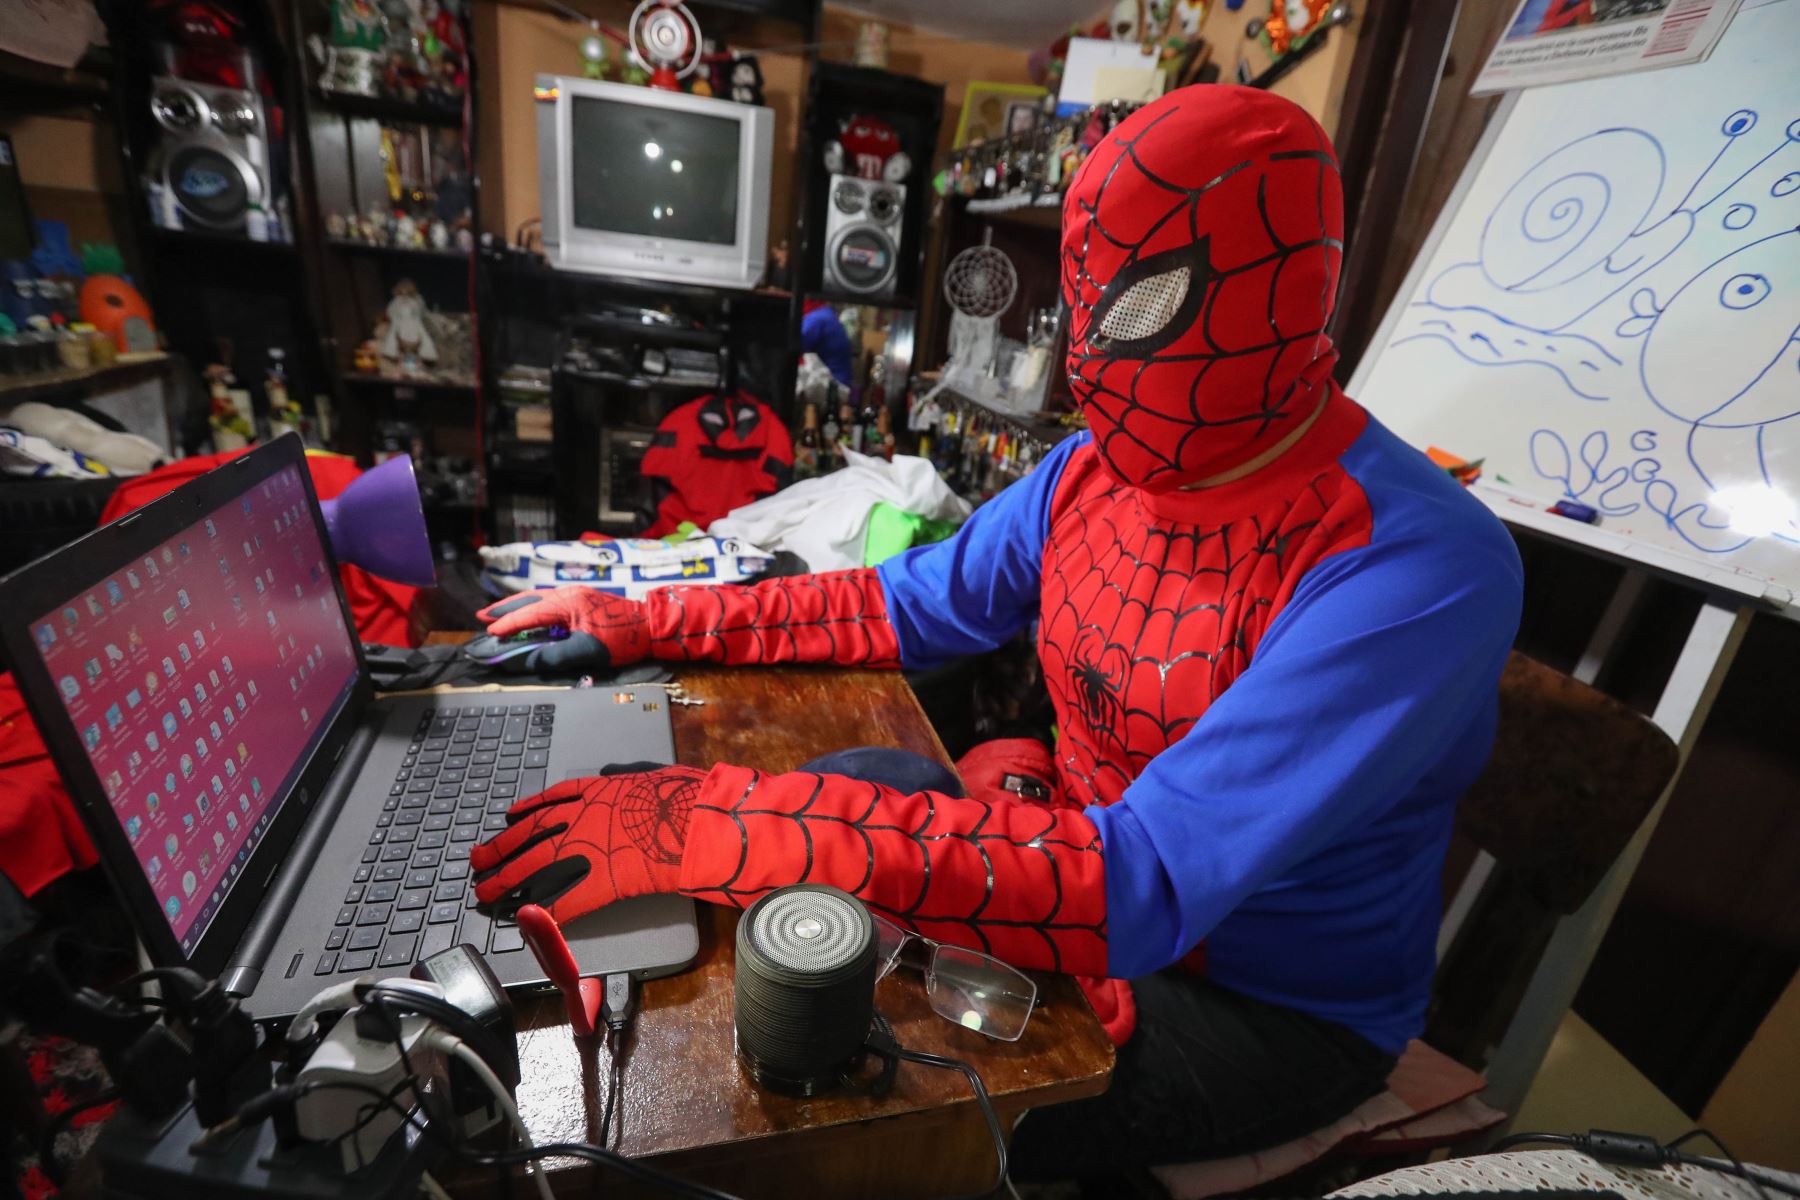 Imagen fechada el 10 de junio que muestra al boliviano Jorge Villarroel, alias "Doctor profe", quien con la máscara y el atuendo del superhéroe Spiderman, da su clase virtual de artes plásticas a través de internet, en La Paz (Bolivia). Foto: EFE